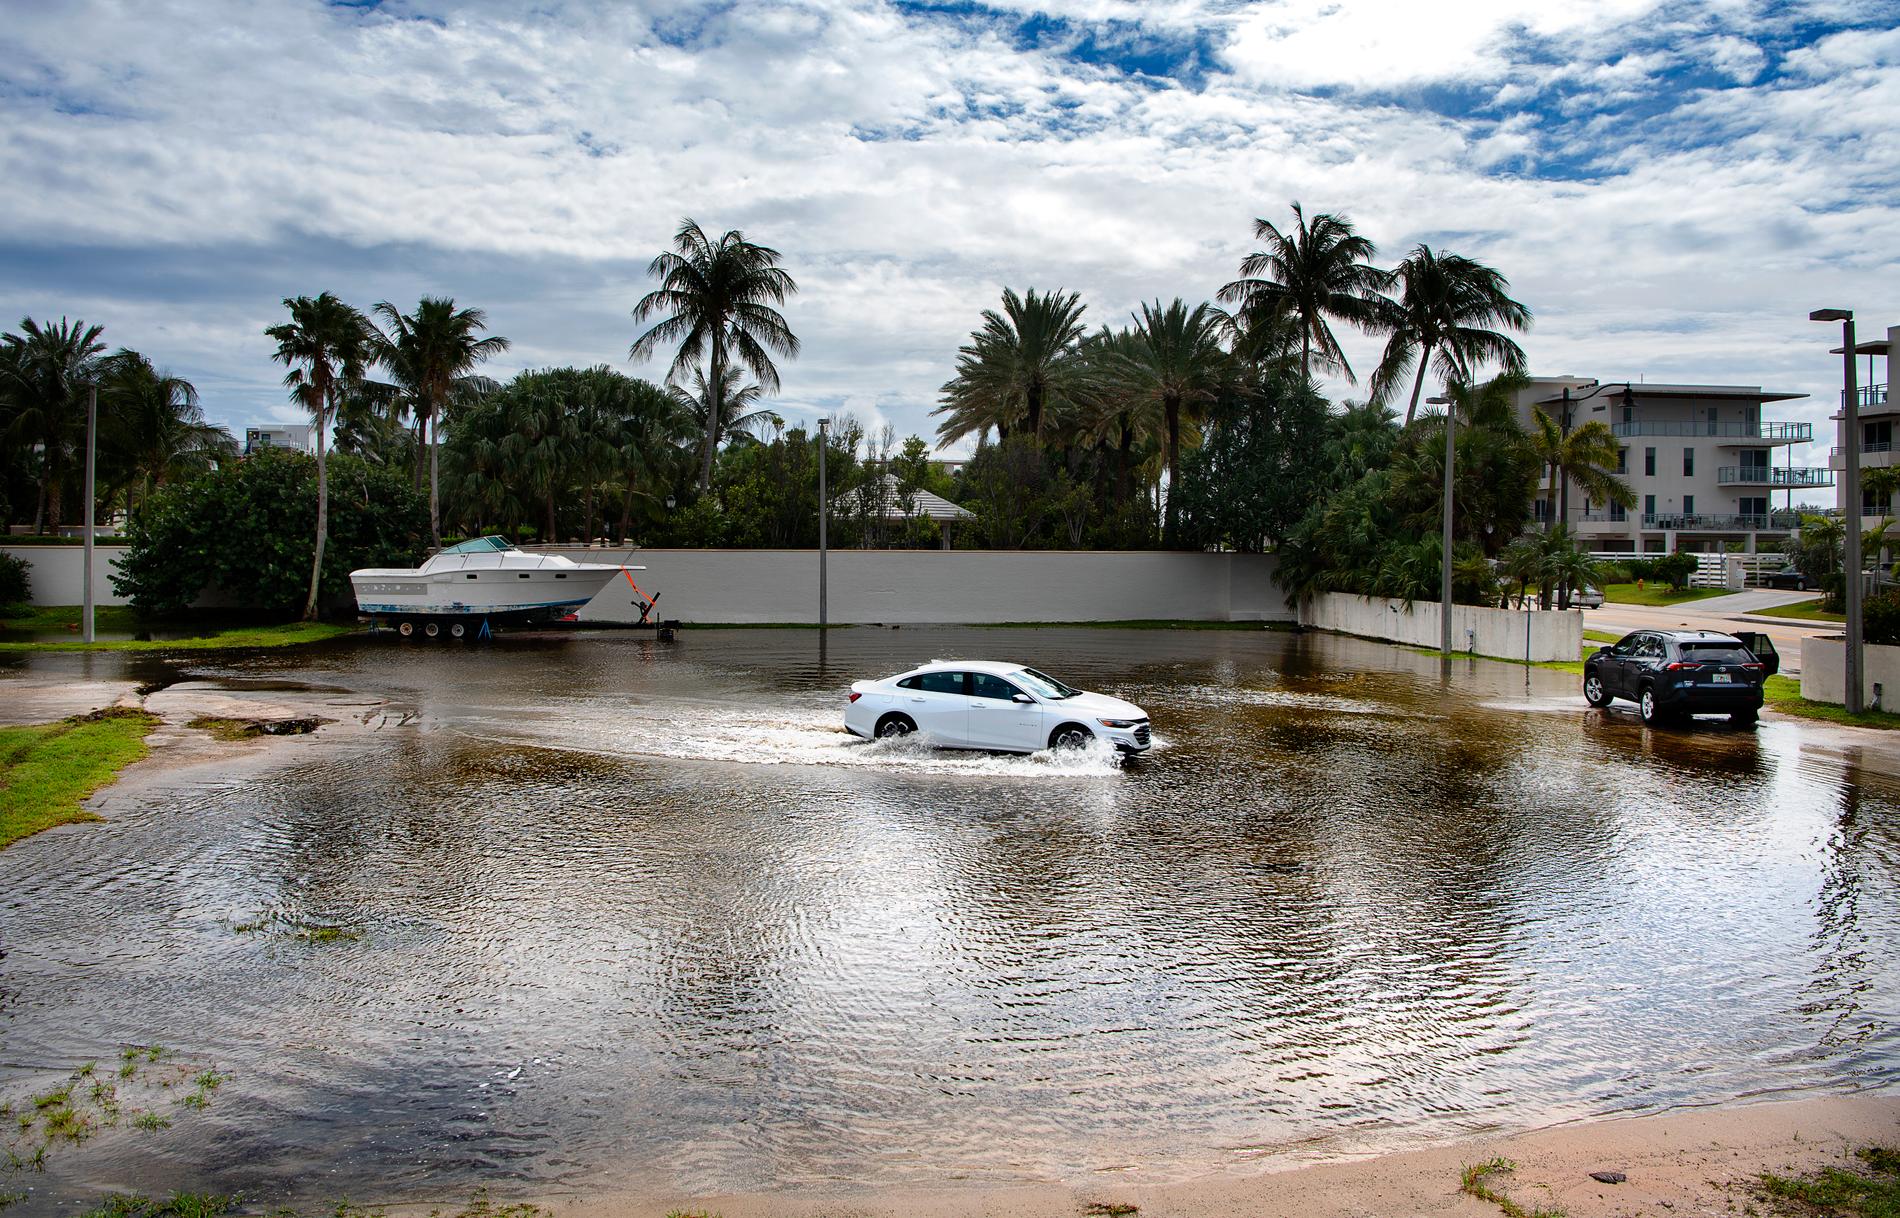 Florida är den delstat som drabbas värst av klimatpåverkan. Vattennivåerna stiger, erosion och orkaner kan göra delar av södra Florida obeboeligt inom 20-30 år. Vägarna i norra Miami Bach översvämmas vid King tide, det högsta tidvattnet.